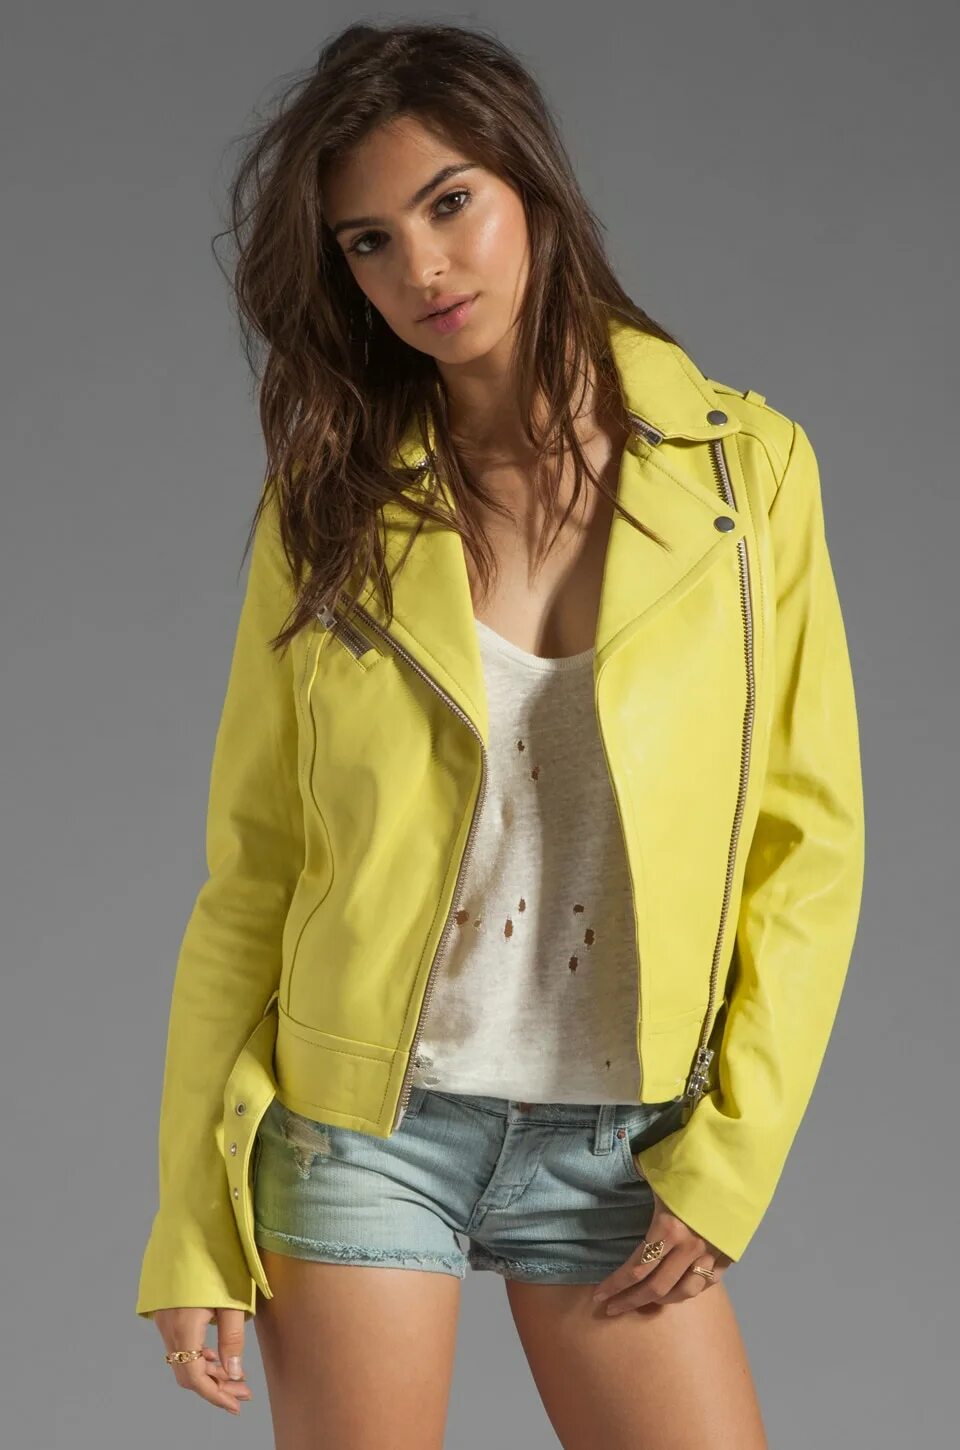 Лимонная кожаная куртка. Желтая кожаная куртка. Куртка косуха желтая. Жёлтая кожаная куртка женская. Кожаная куртка лимонного цвета.